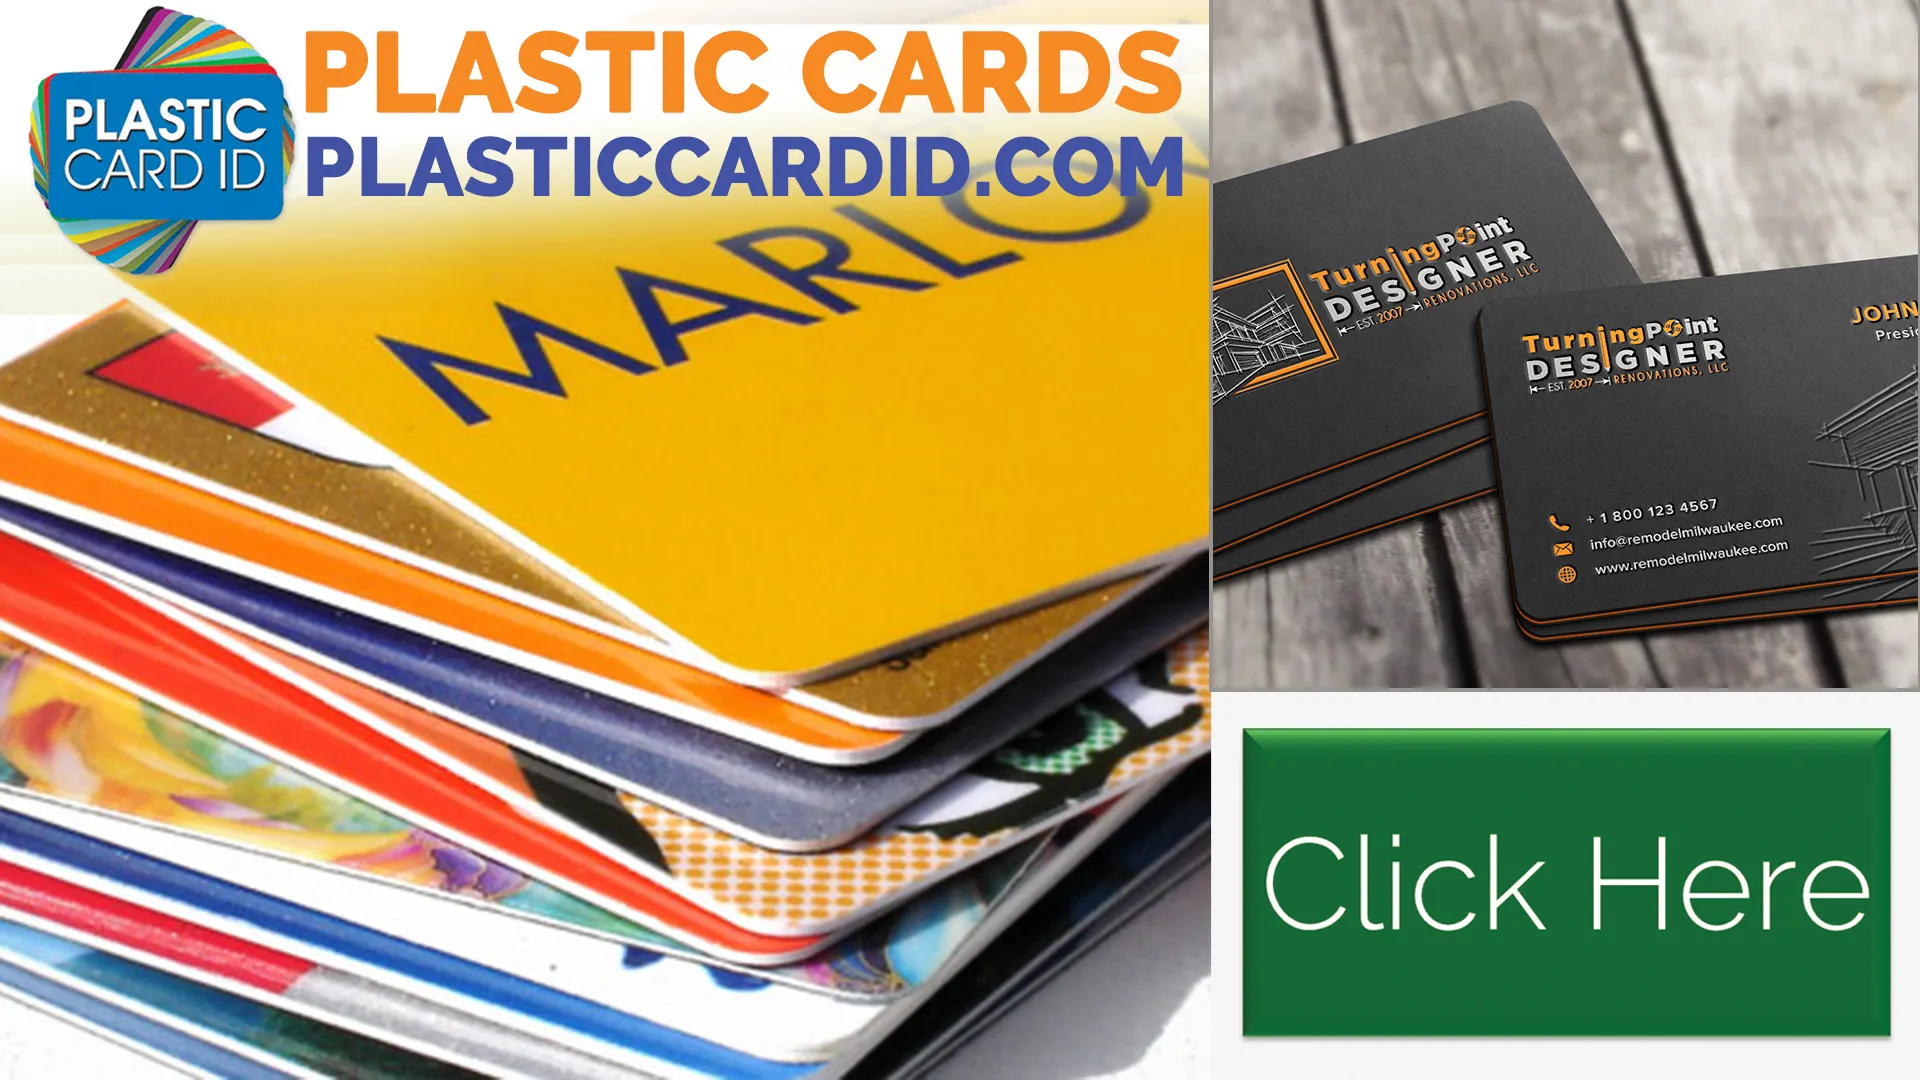 The Economic Impact of Plastic Card Longevity